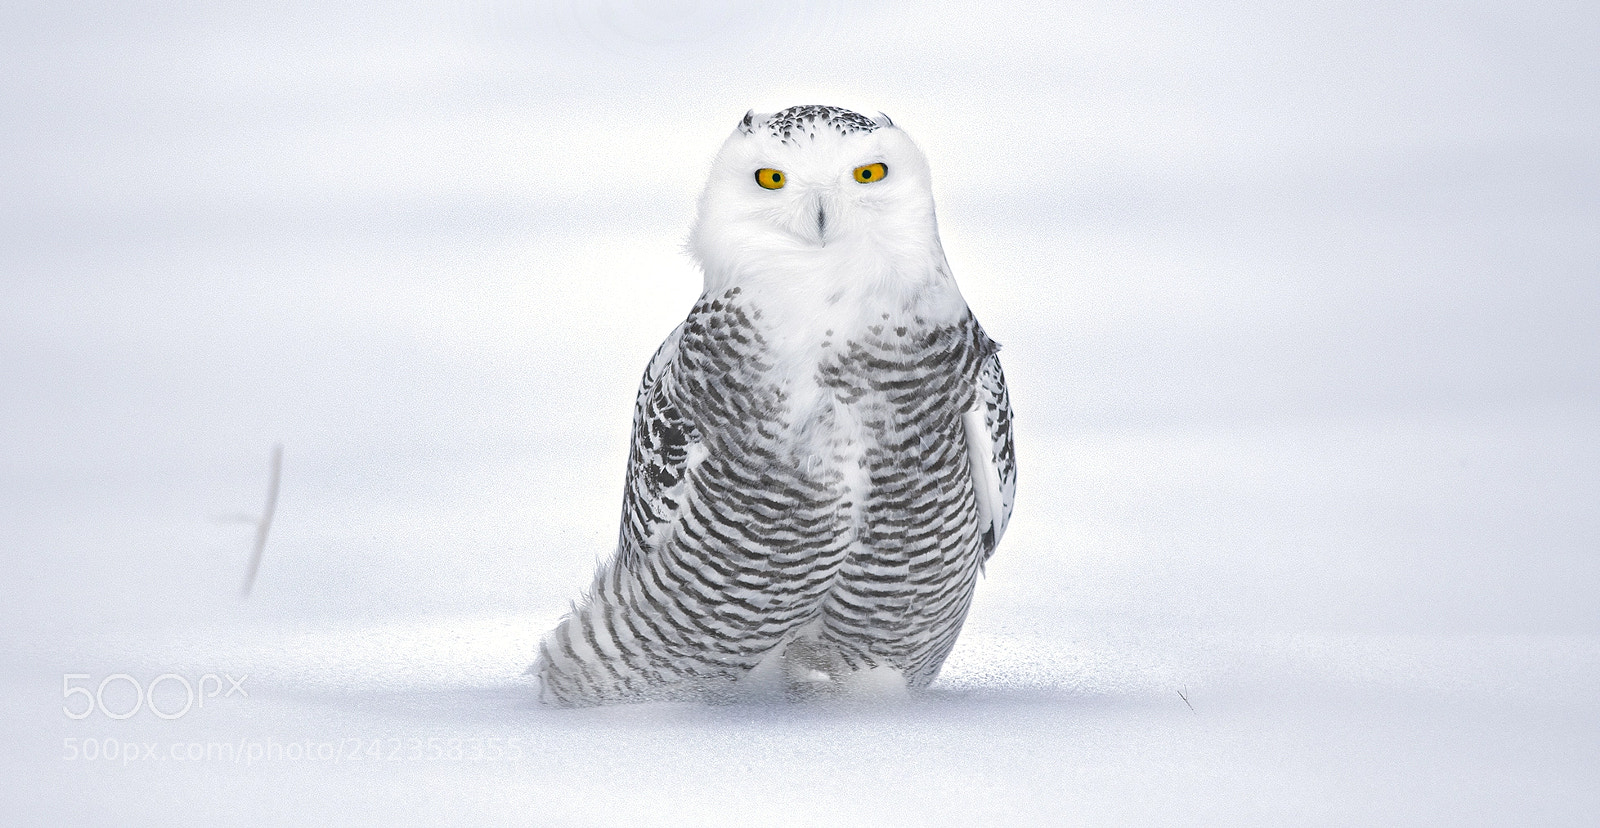 Nikon D5500 sample photo. Snowy owl photography